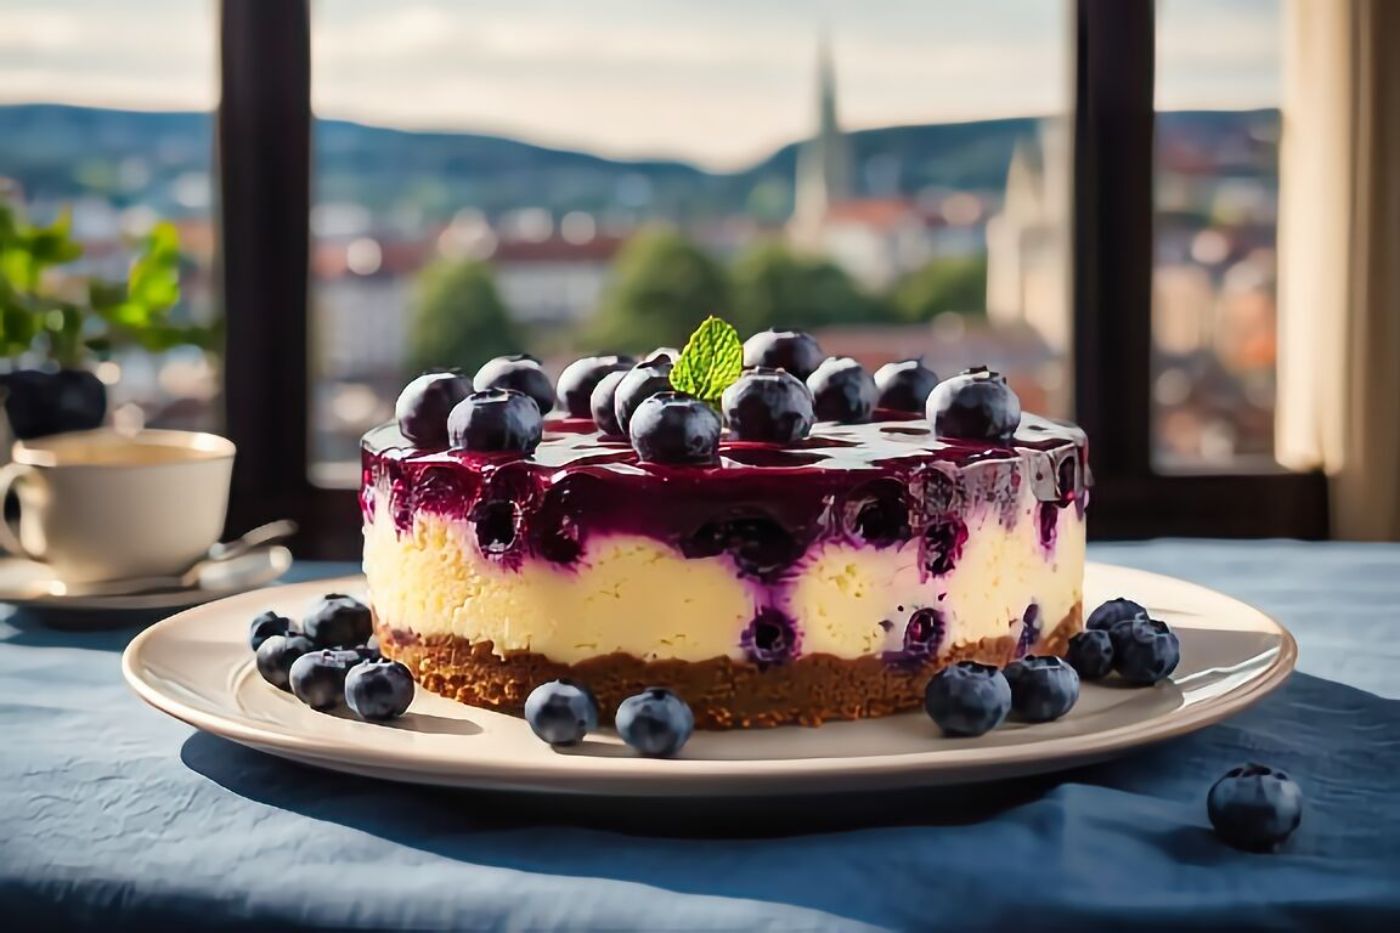 Heidelbeerkuchen (Blueberry Cheesecake)